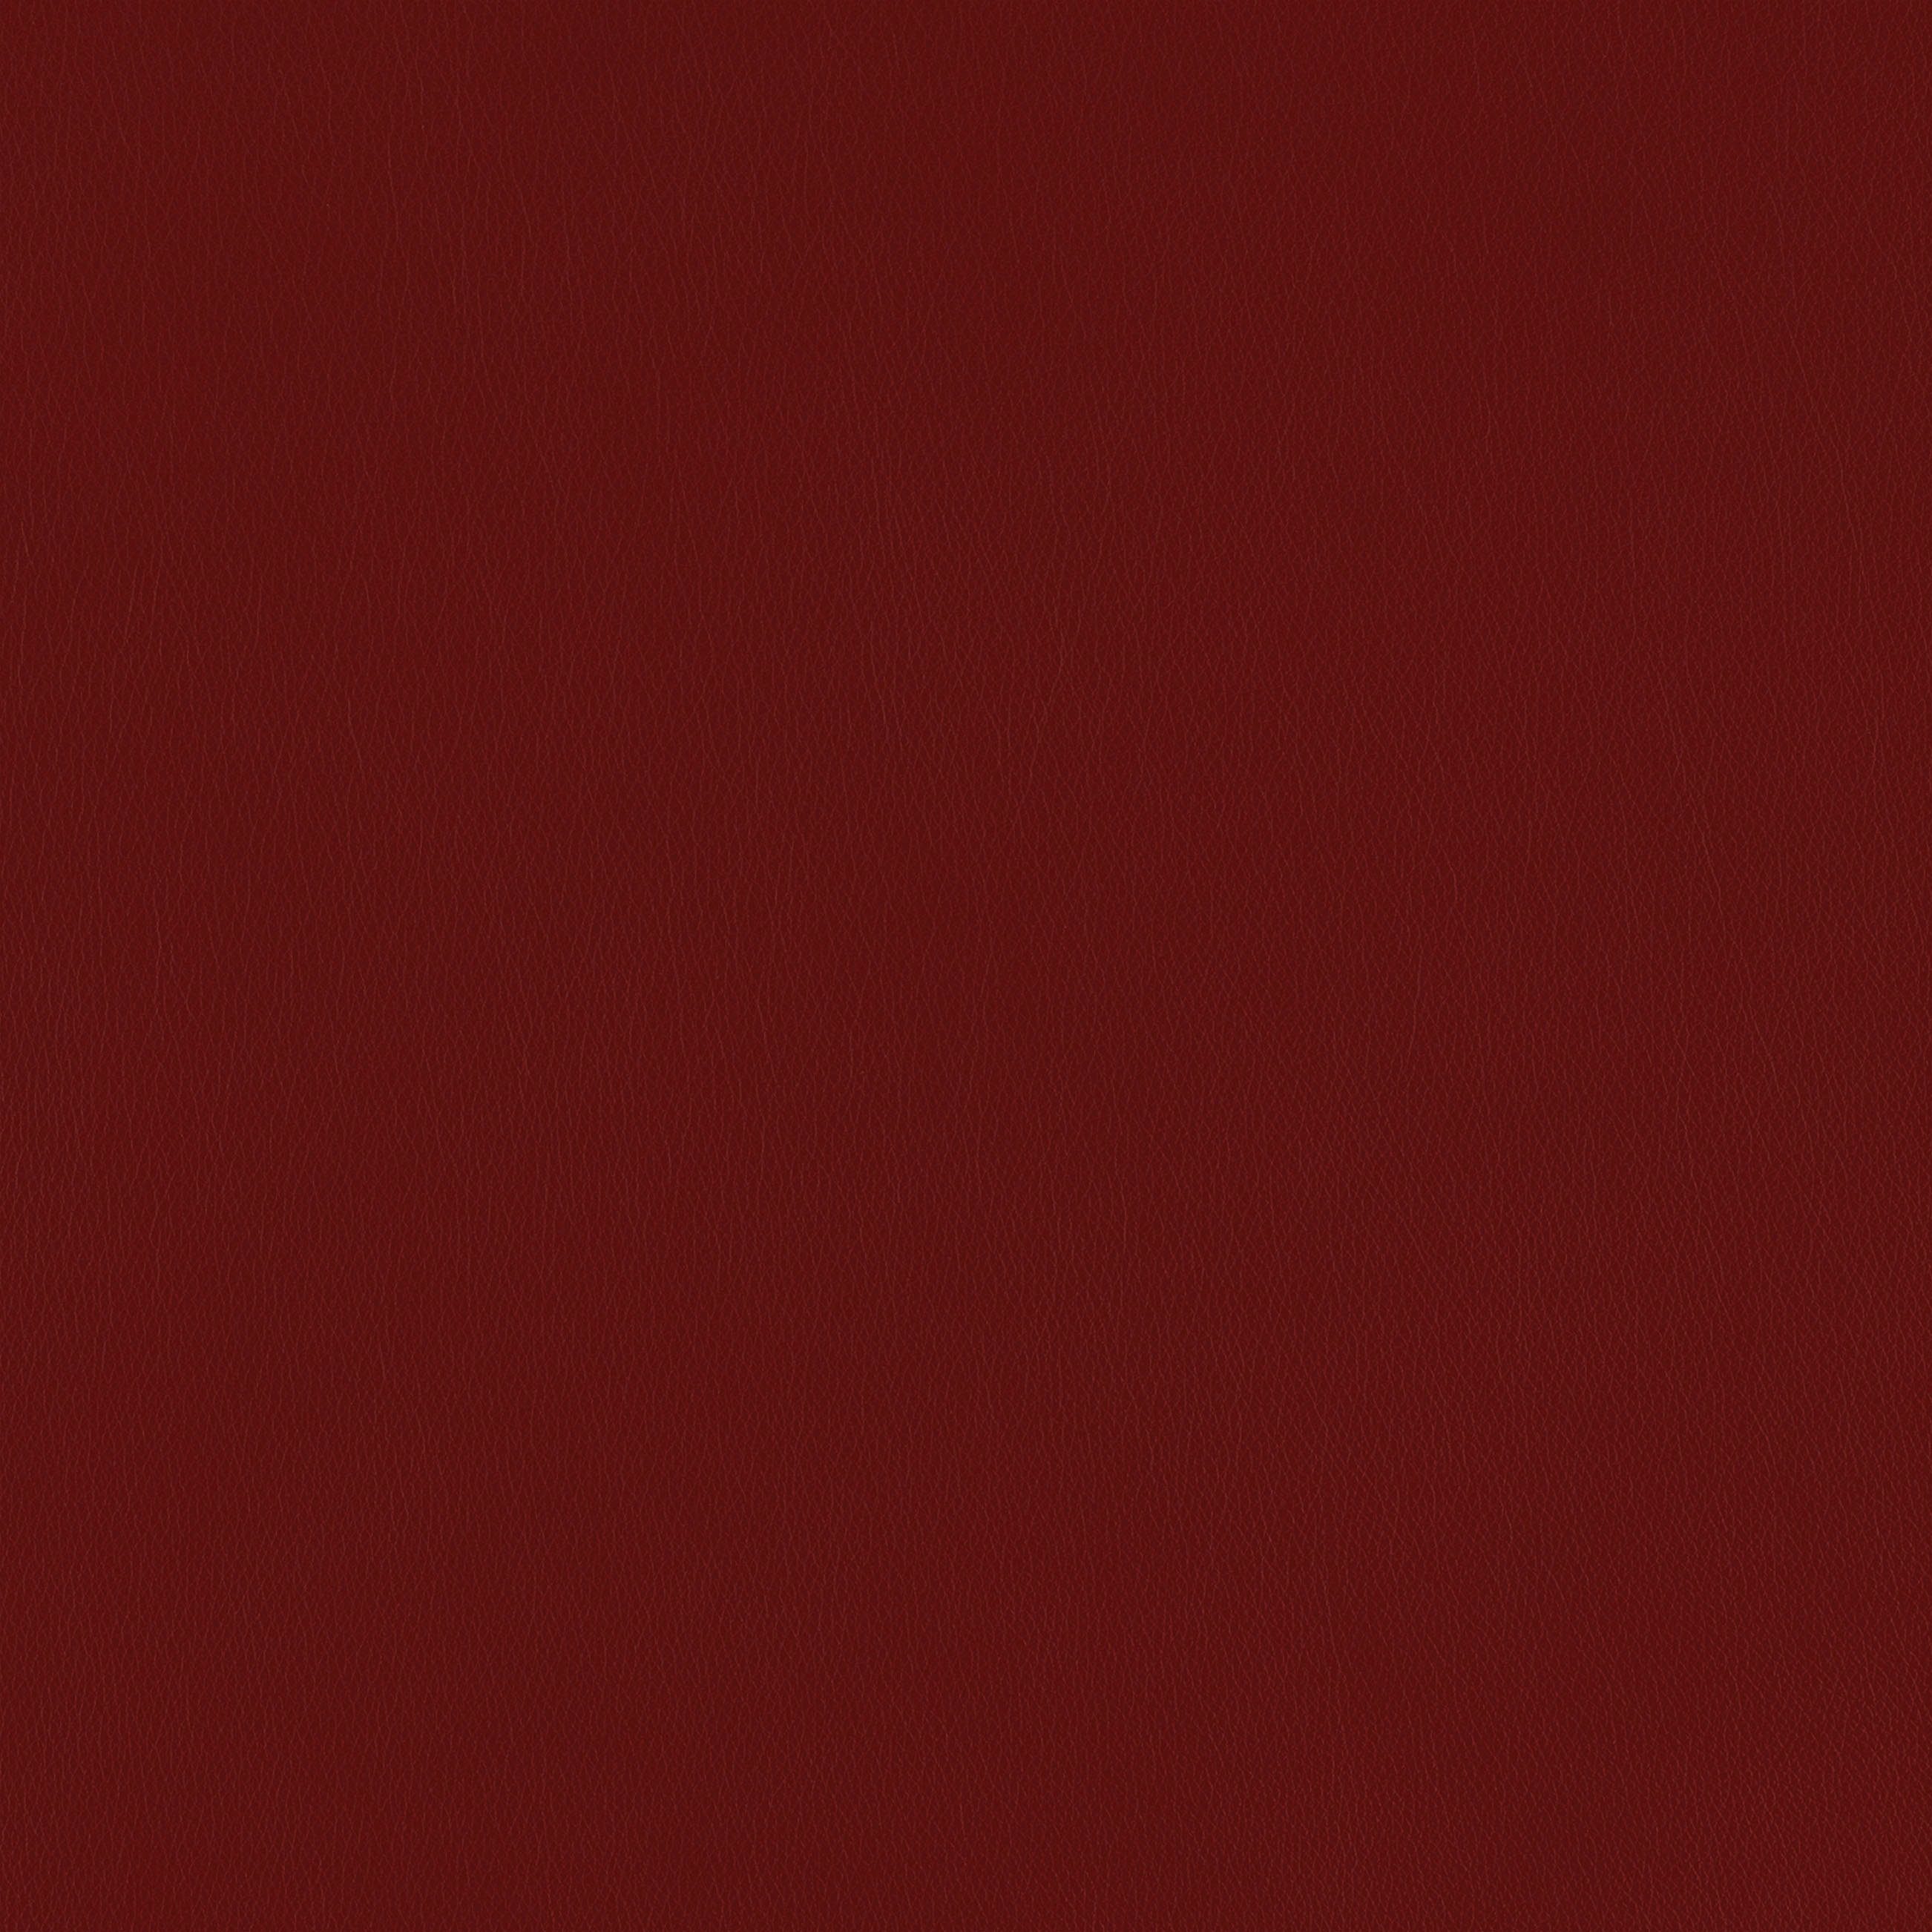 2,5-Sitzer sally, W.SCHILLIG in red Metallfüßen mit pulverbeschichtet, 174 cm Bronze Z59 Breite ruby